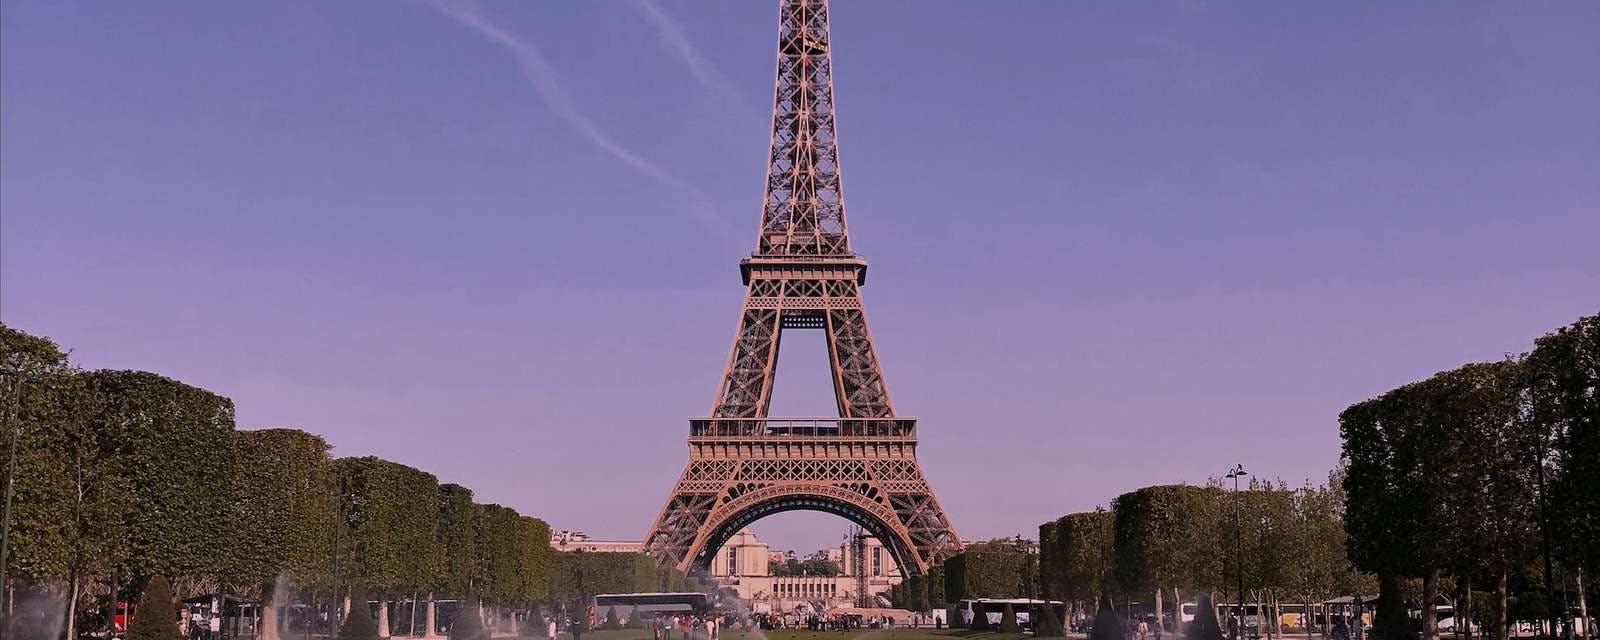 Eiffelturm mit Spiegelung im Wasser